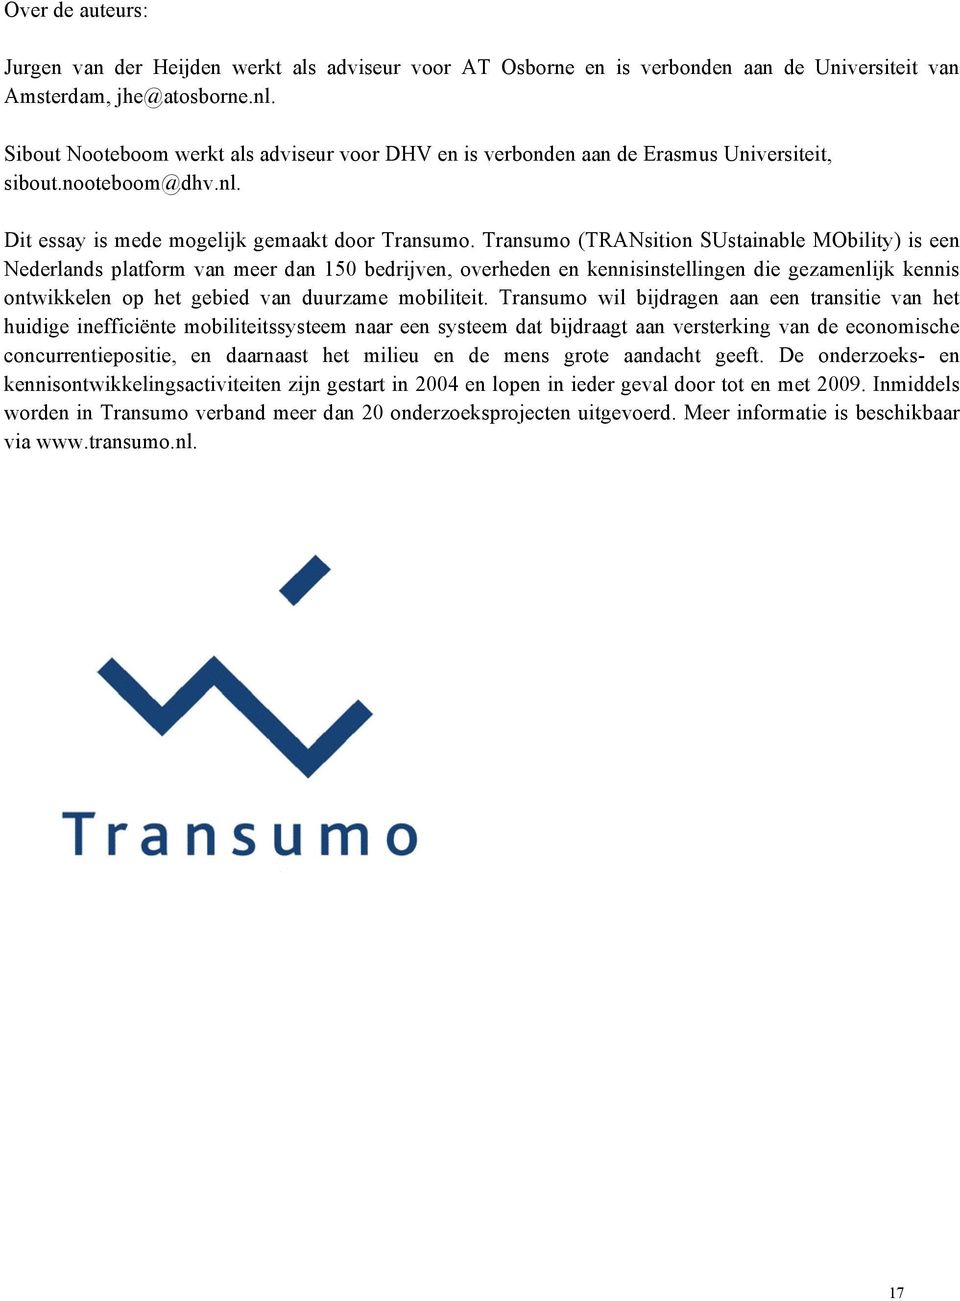 Transumo (TRANsition SUstainable MObility) is een Nederlands platform van meer dan 150 bedrijven, overheden en kennisinstellingen die gezamenlijk kennis ontwikkelen op het gebied van duurzame